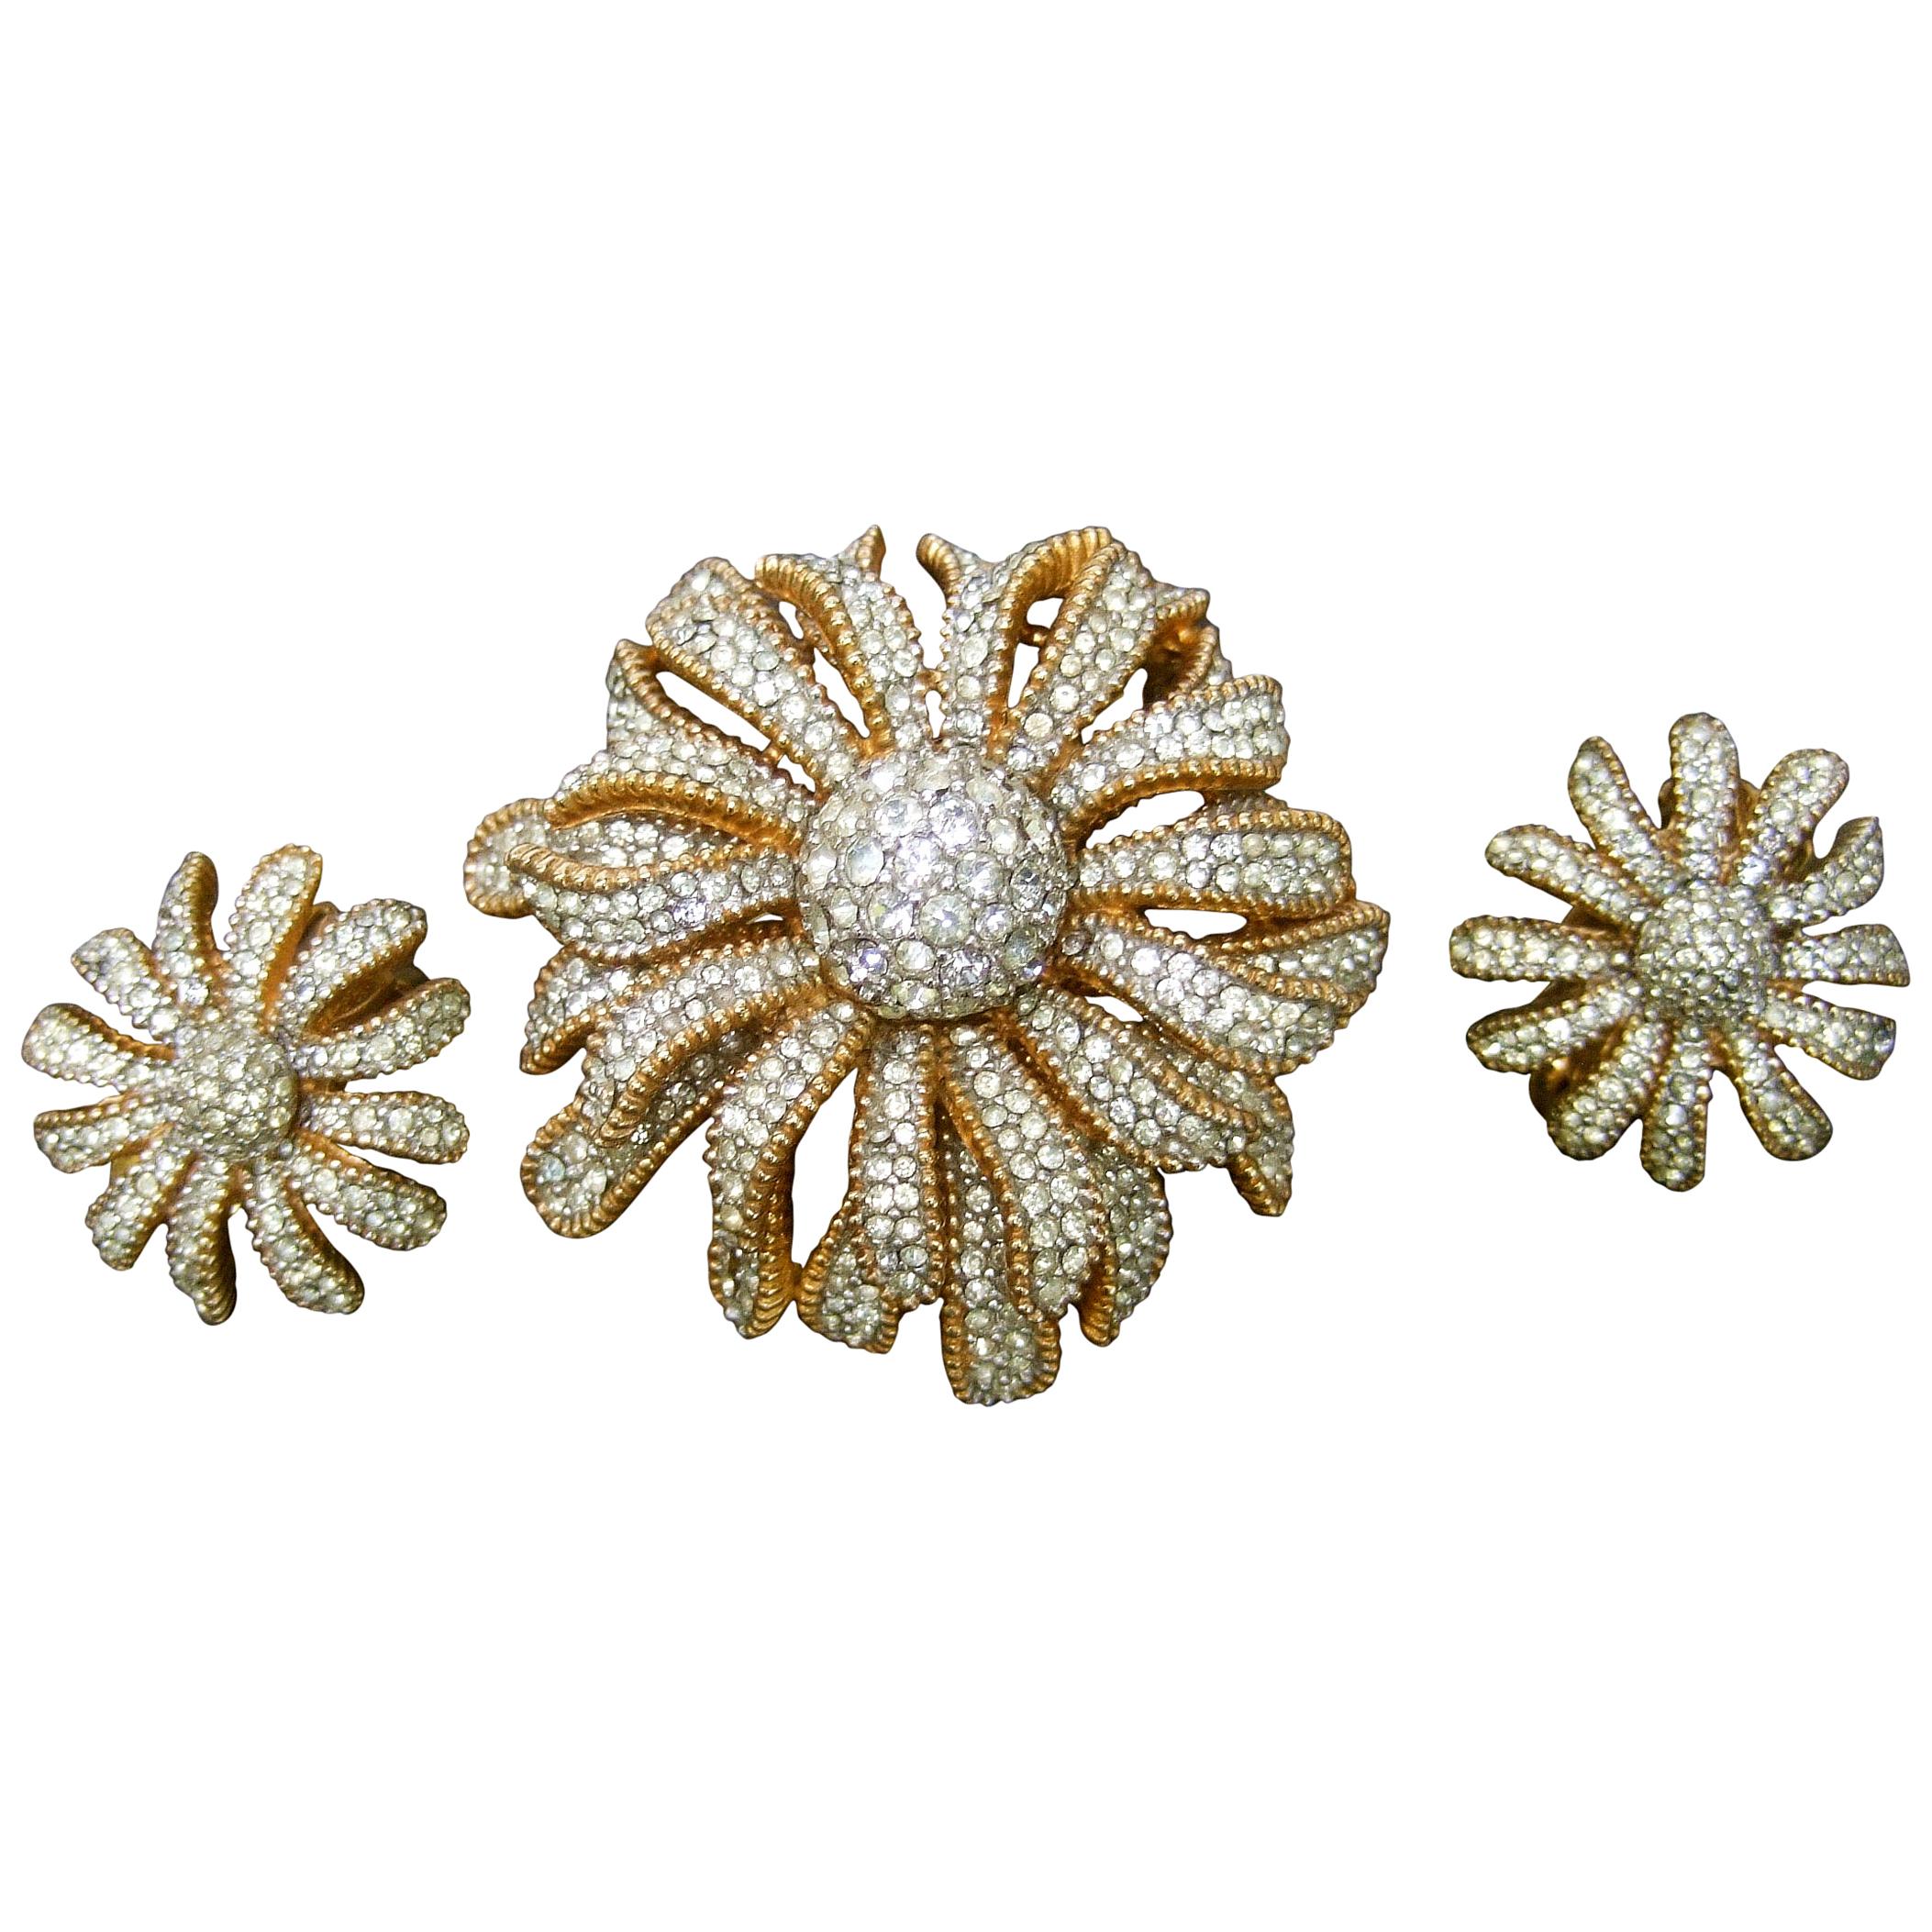 Ciner Crystal Gilt Metal Floral Brooch & Earrings Circa 1970